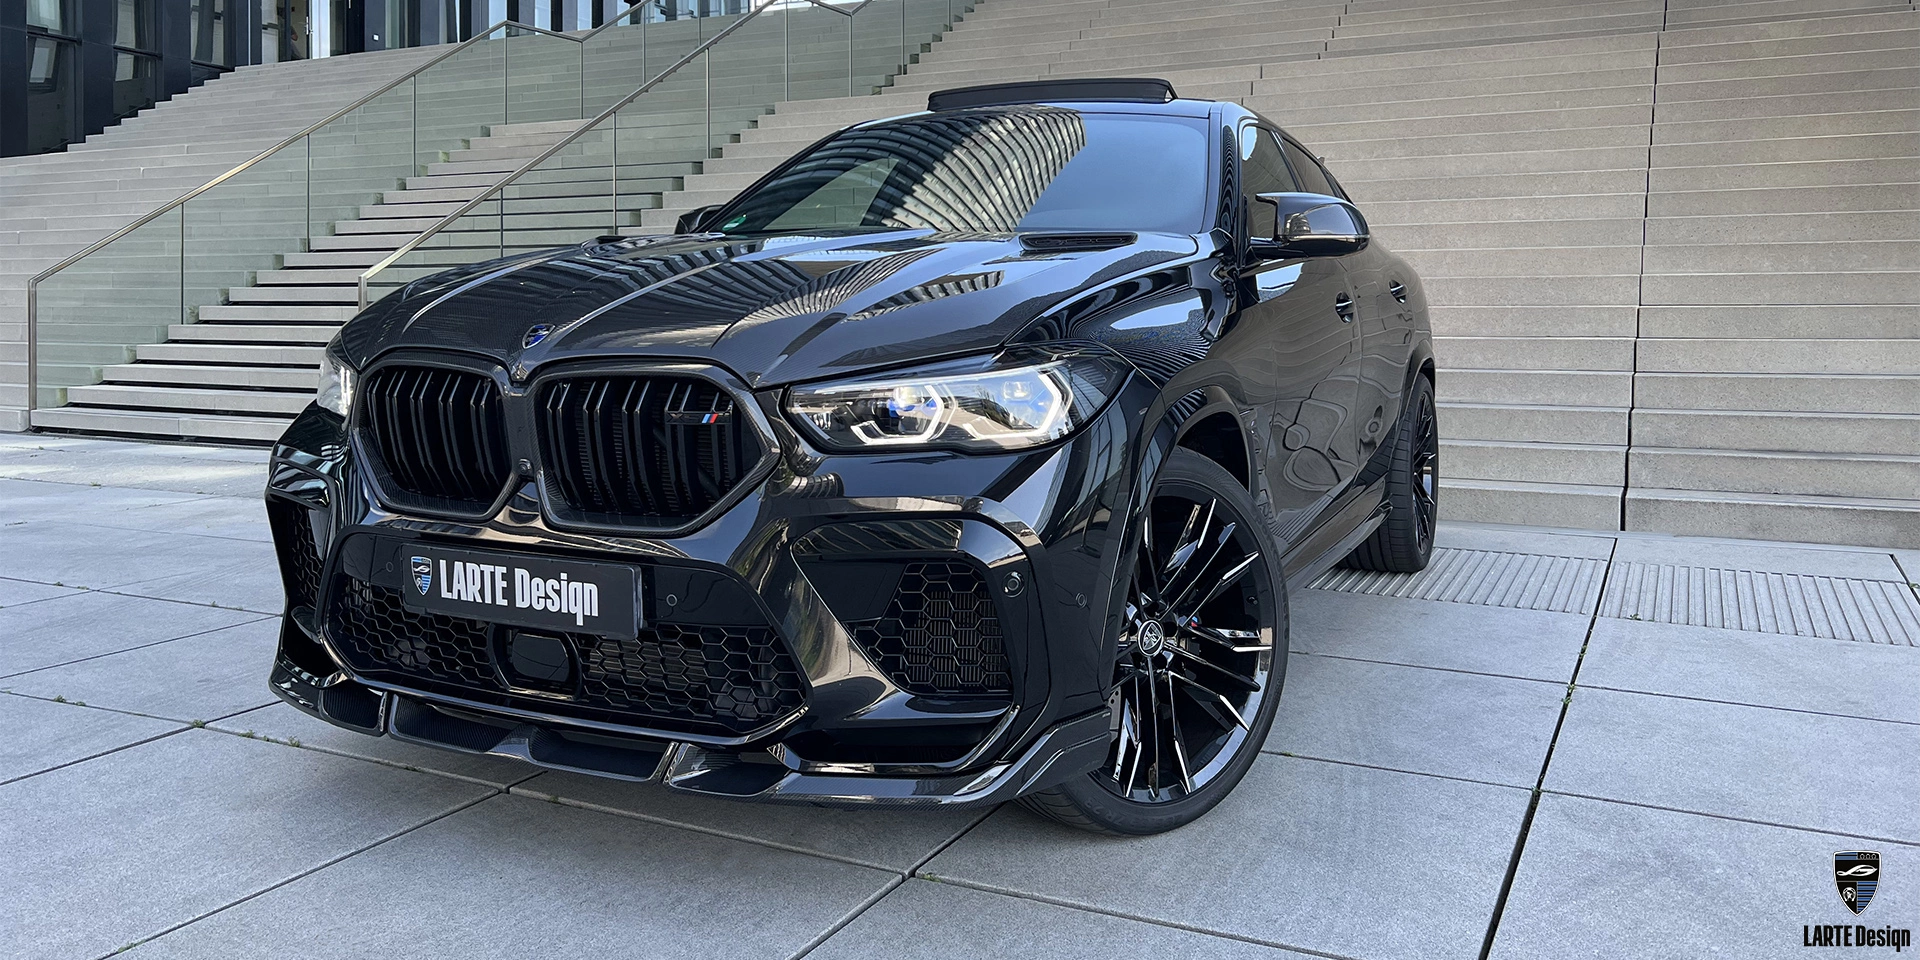 Kaufe einen Frontstoßstangensplitter aus Kohlefaser für BMW X6 M Competition F96 in Carbon Black Metallic